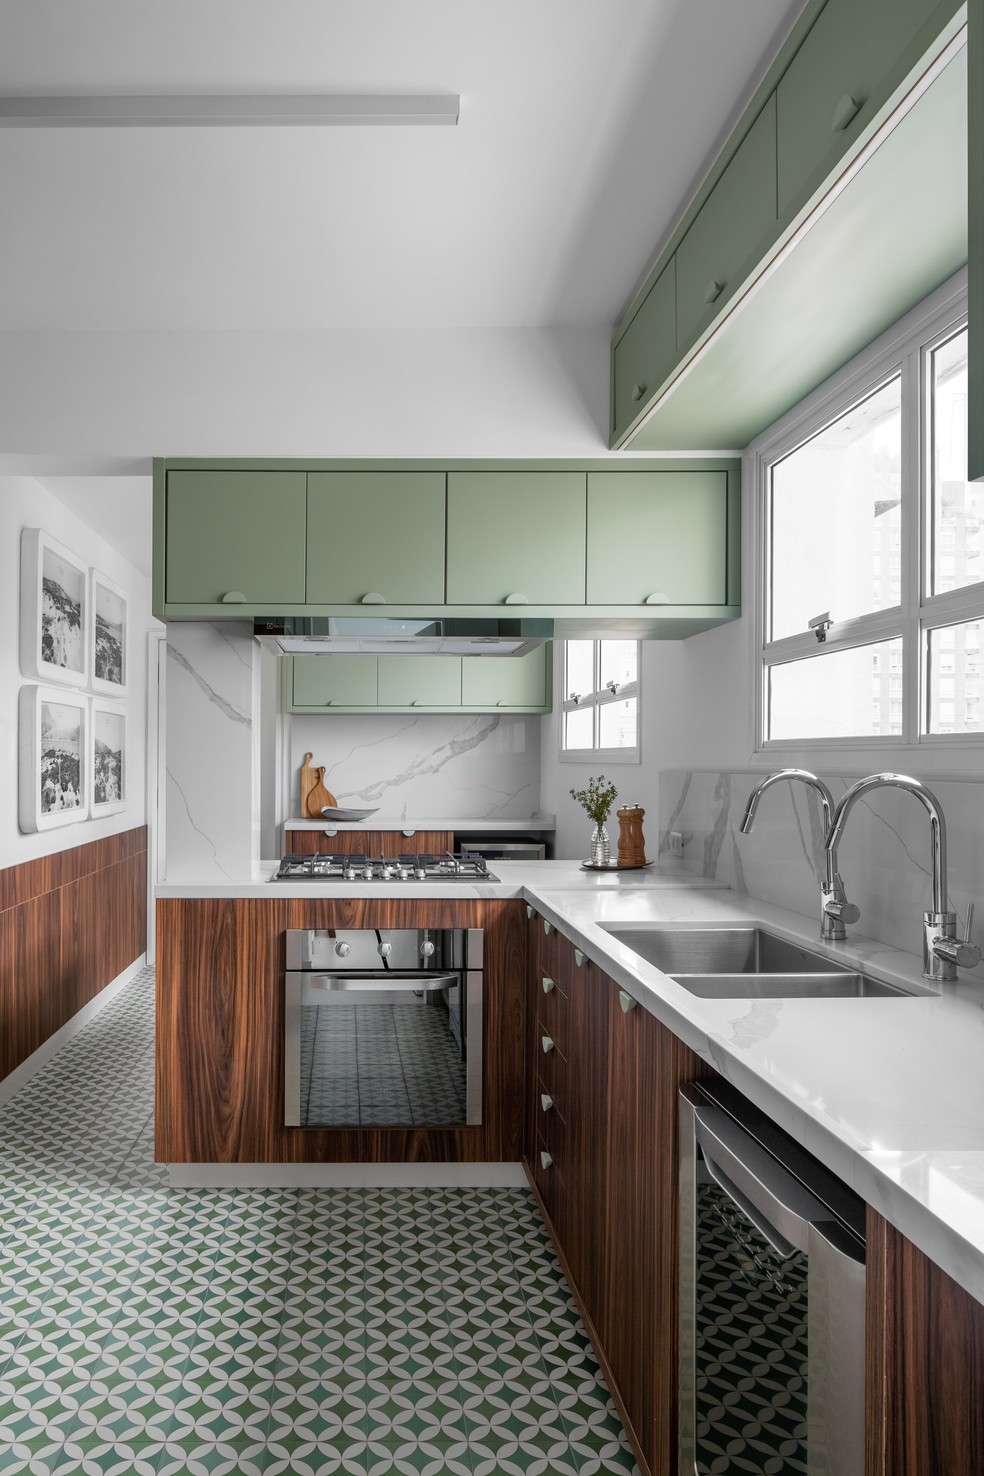 A cozinha ganhou um charmoso visual retrô com marcenaria de pau-ferro e laca verde, além dos ladrilhos hidráulicos — Foto: Carolina Lacaz